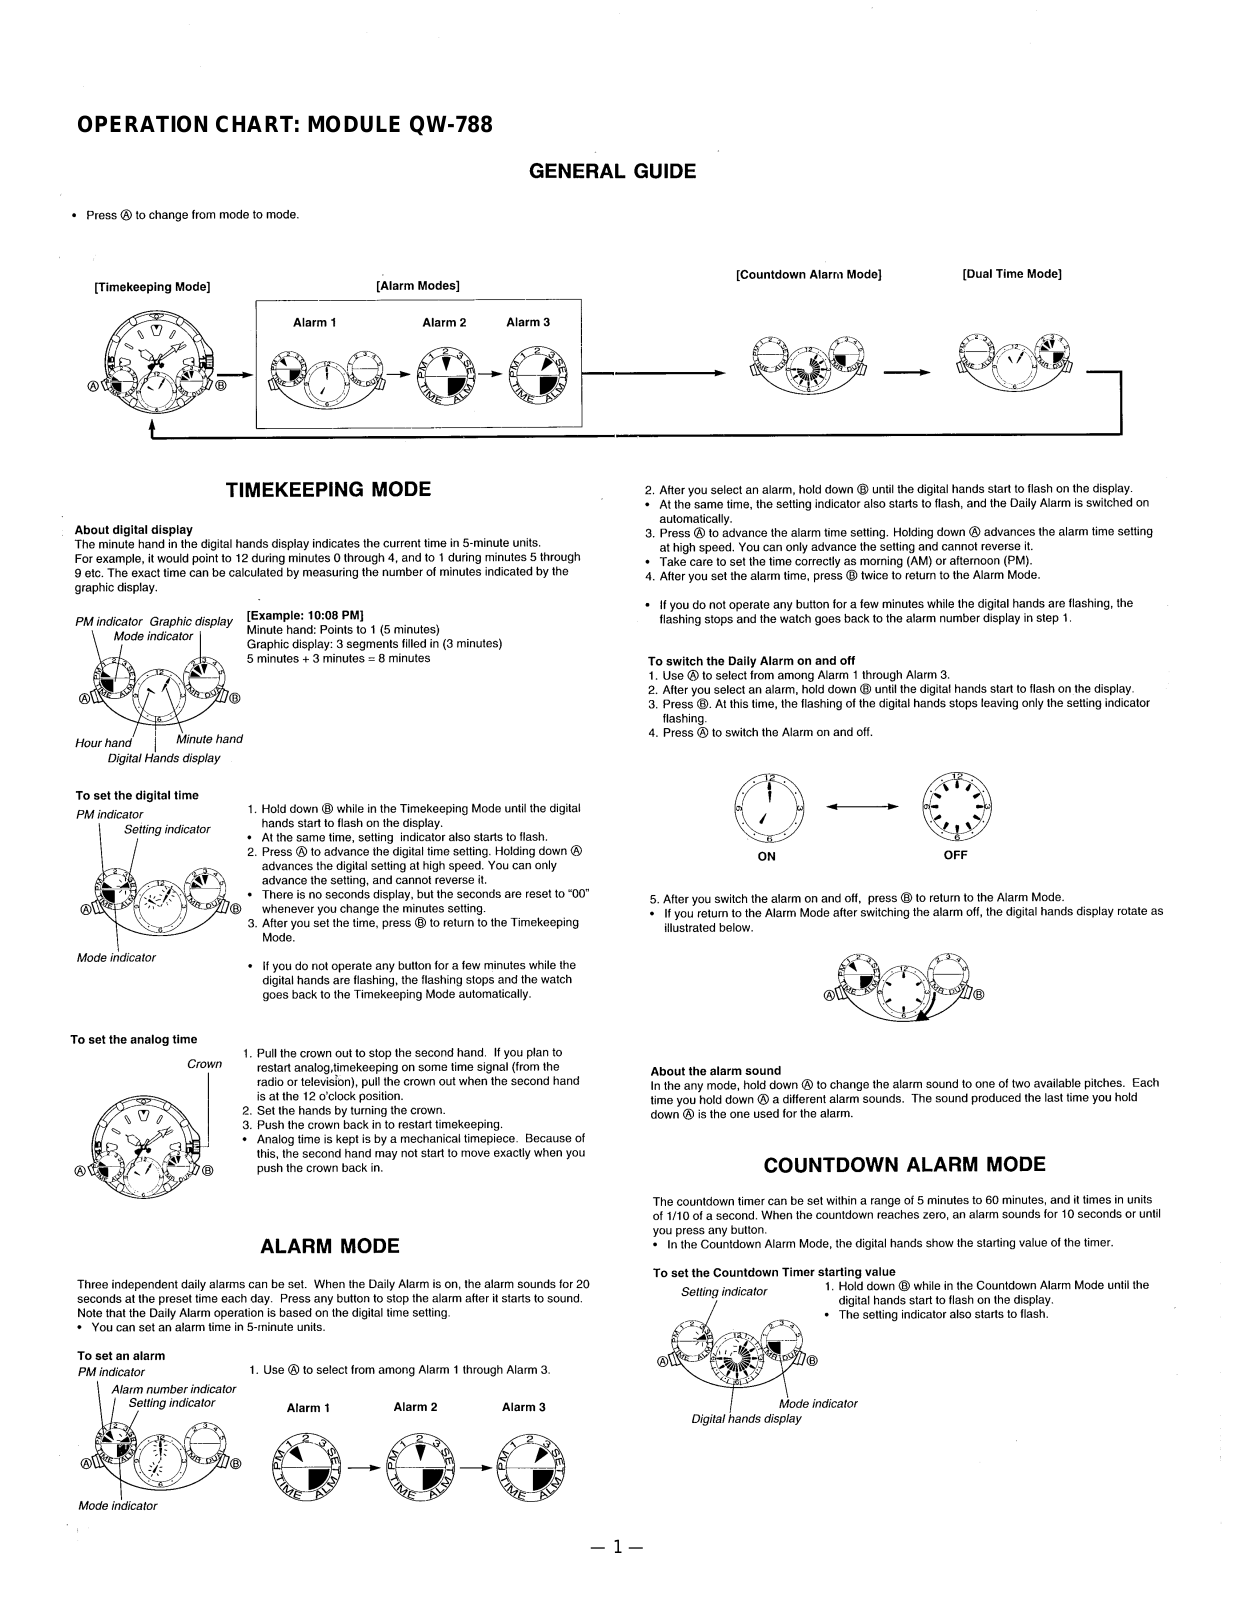 Casio 788 Owner's Manual